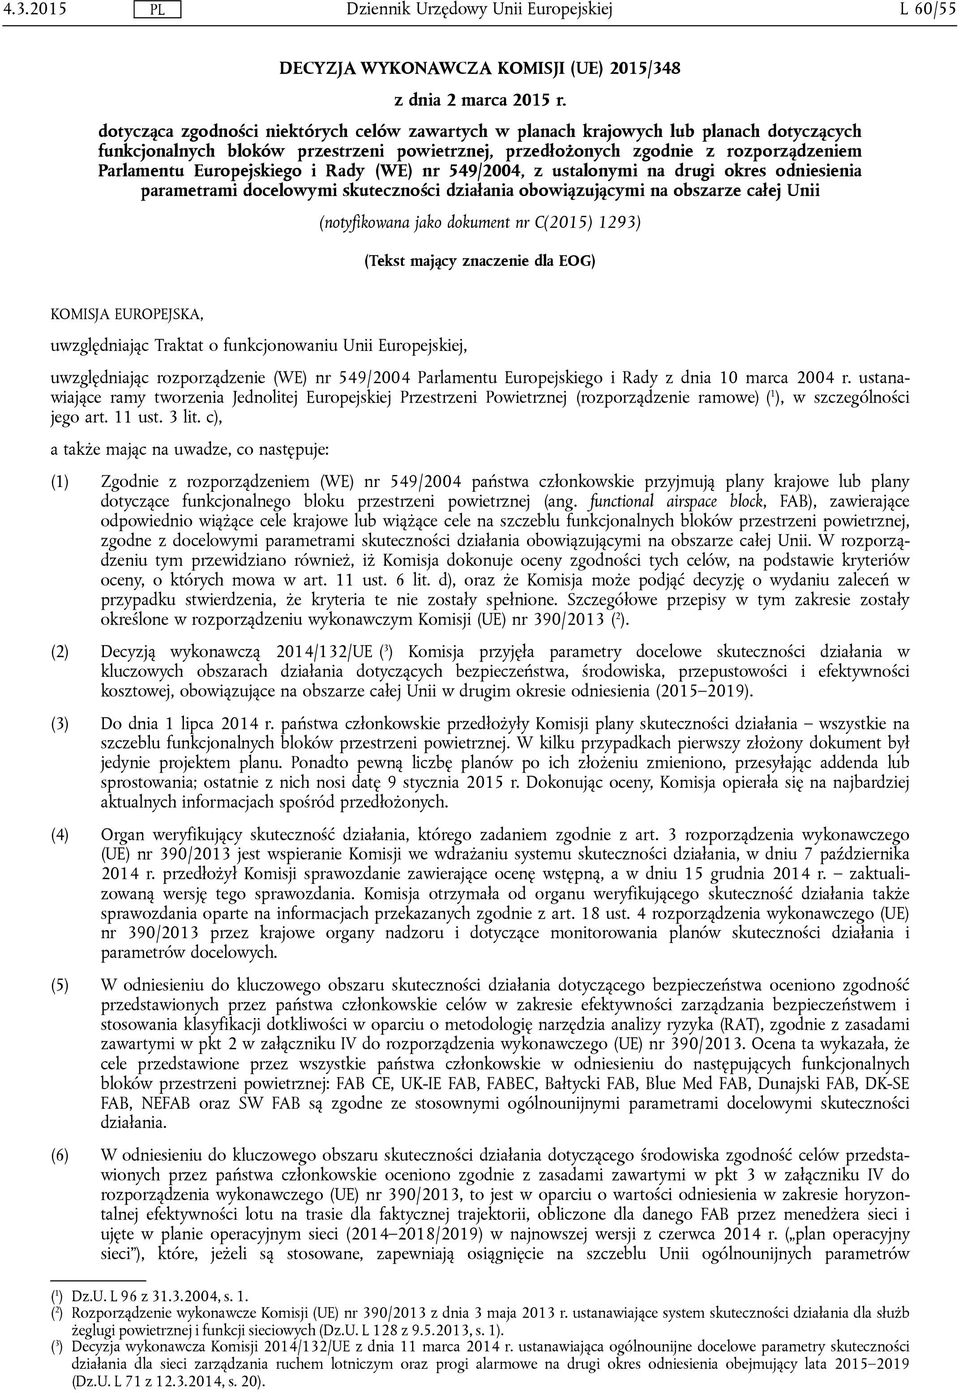 Europejskiego i Rady (WE) nr 549/2004, z ustalonymi na drugi okres odniesienia parametrami docelowymi skuteczności działania obowiązującymi na obszarze całej Unii (notyfikowana jako dokument nr